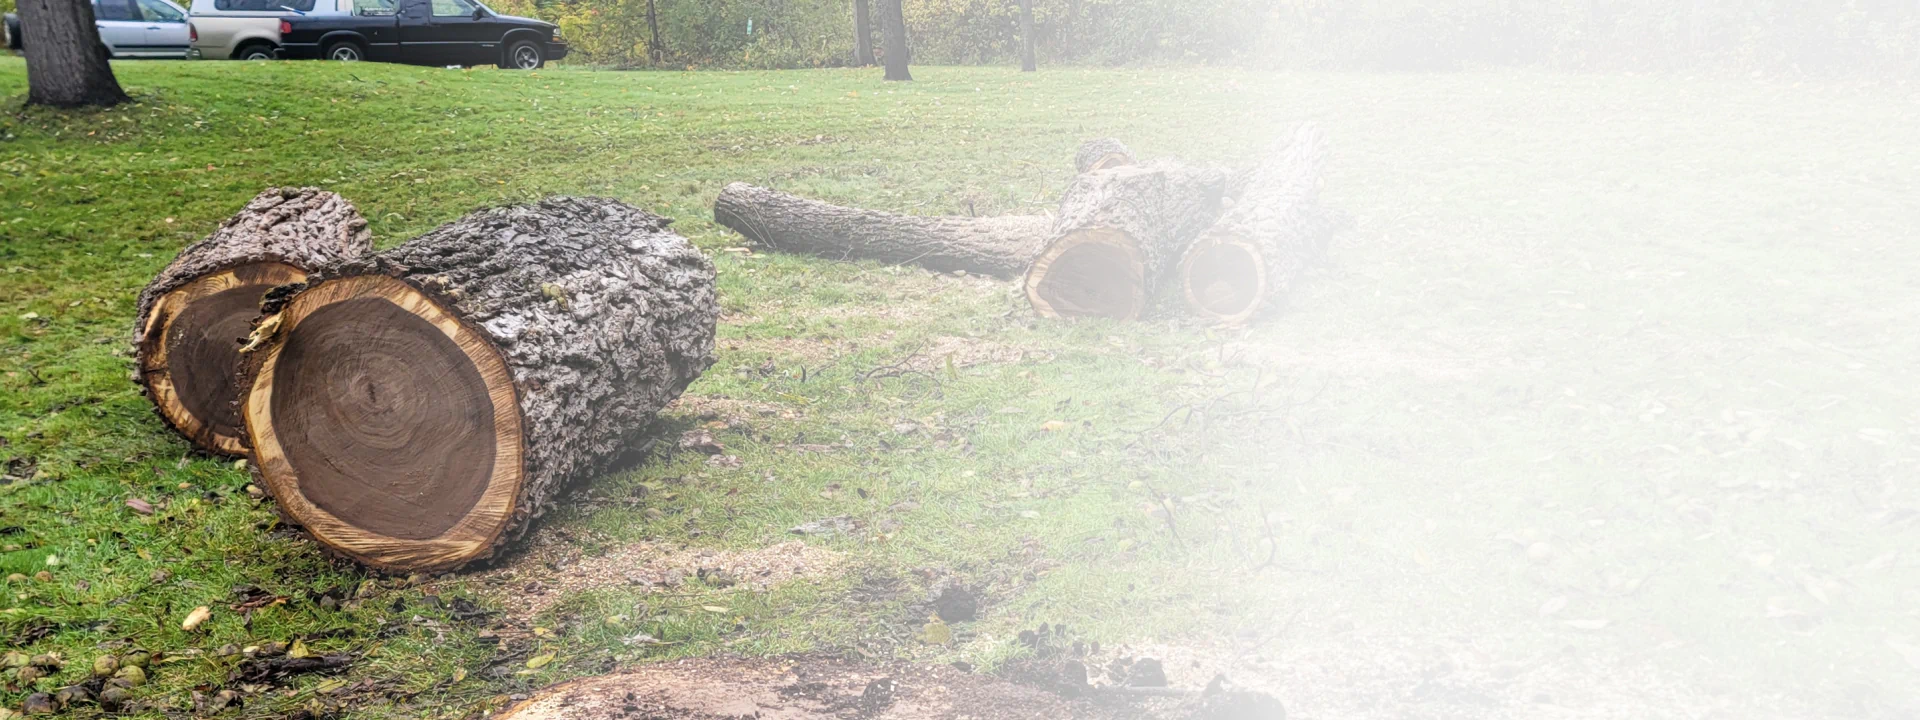 logs on a lawn